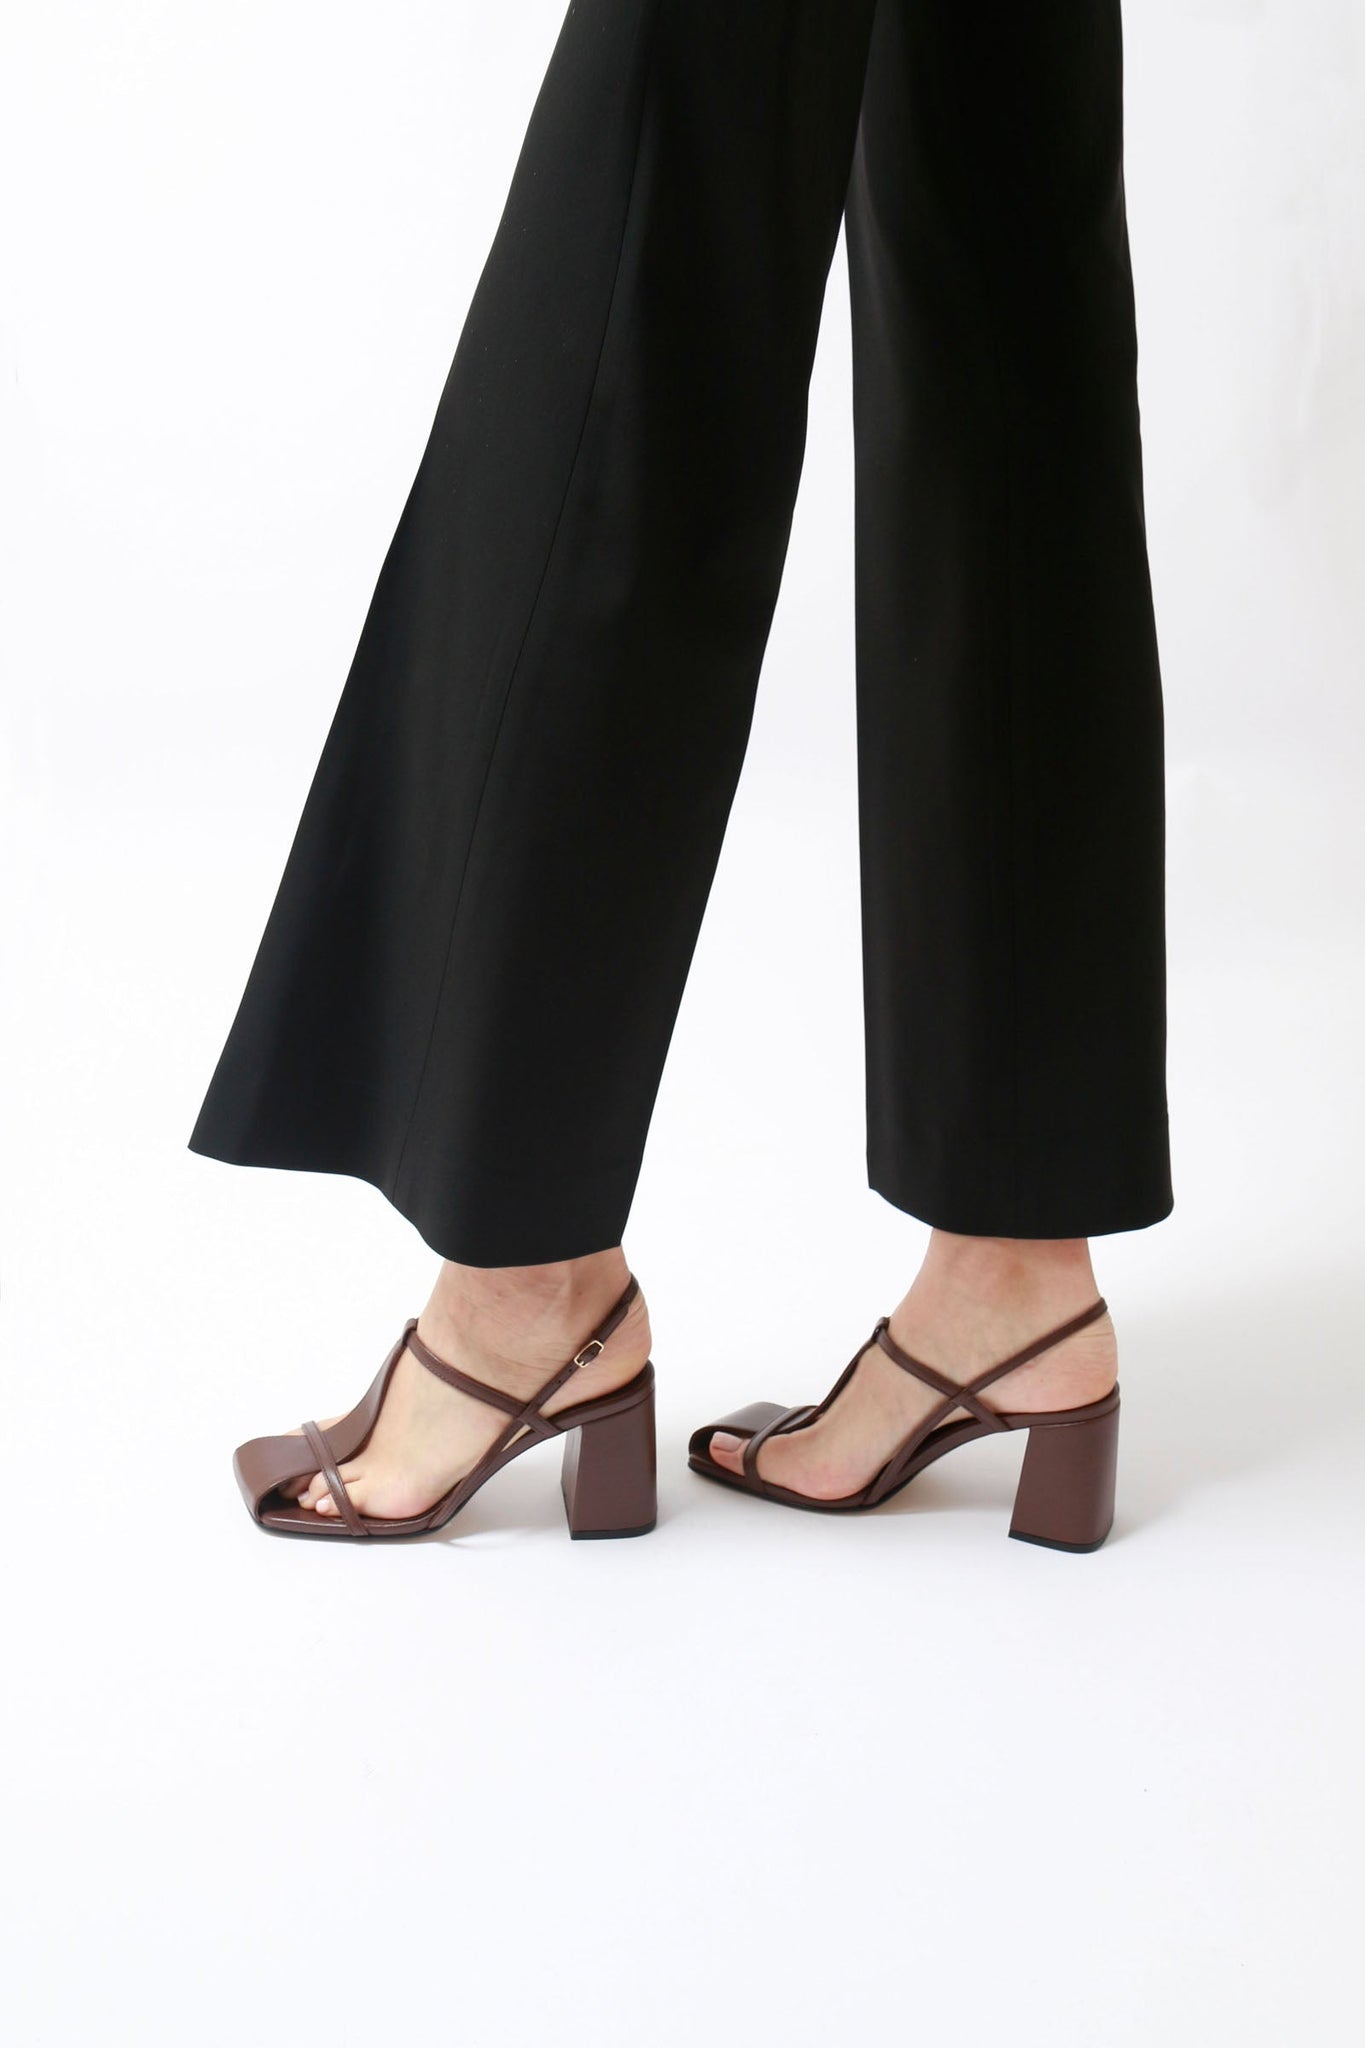 Frisia - Dark Brown Leather Sandals